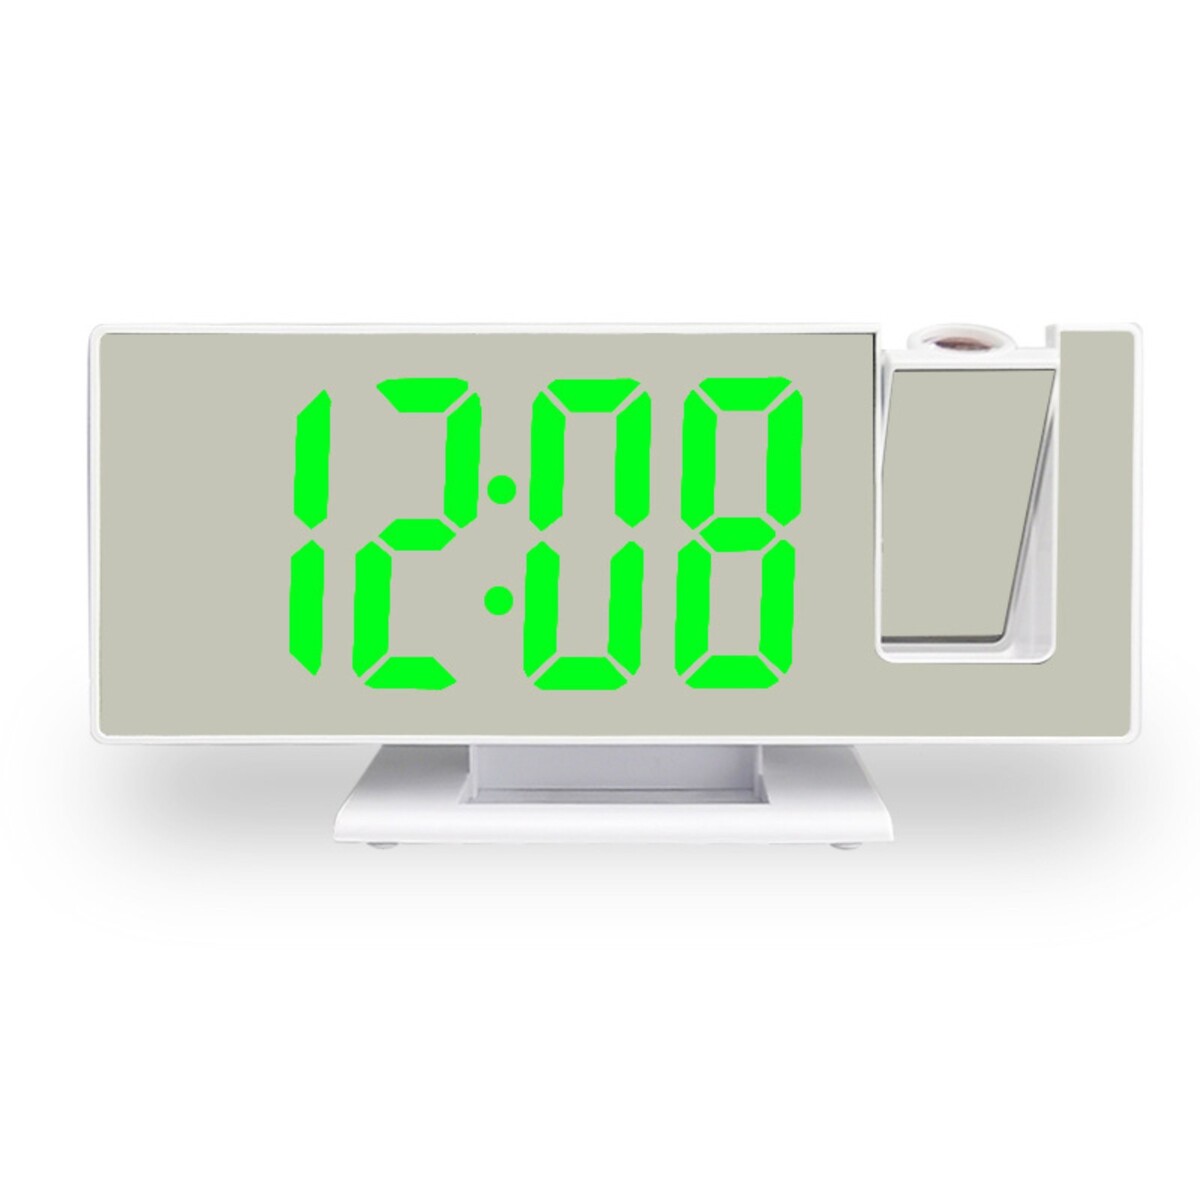 Часы - будильник электронные настольные с проекцией на потолок, термометром, календарем, usb 9197734 часы будильник электронные настольные с термометром календарем 15 х 6 3 см ааа usb